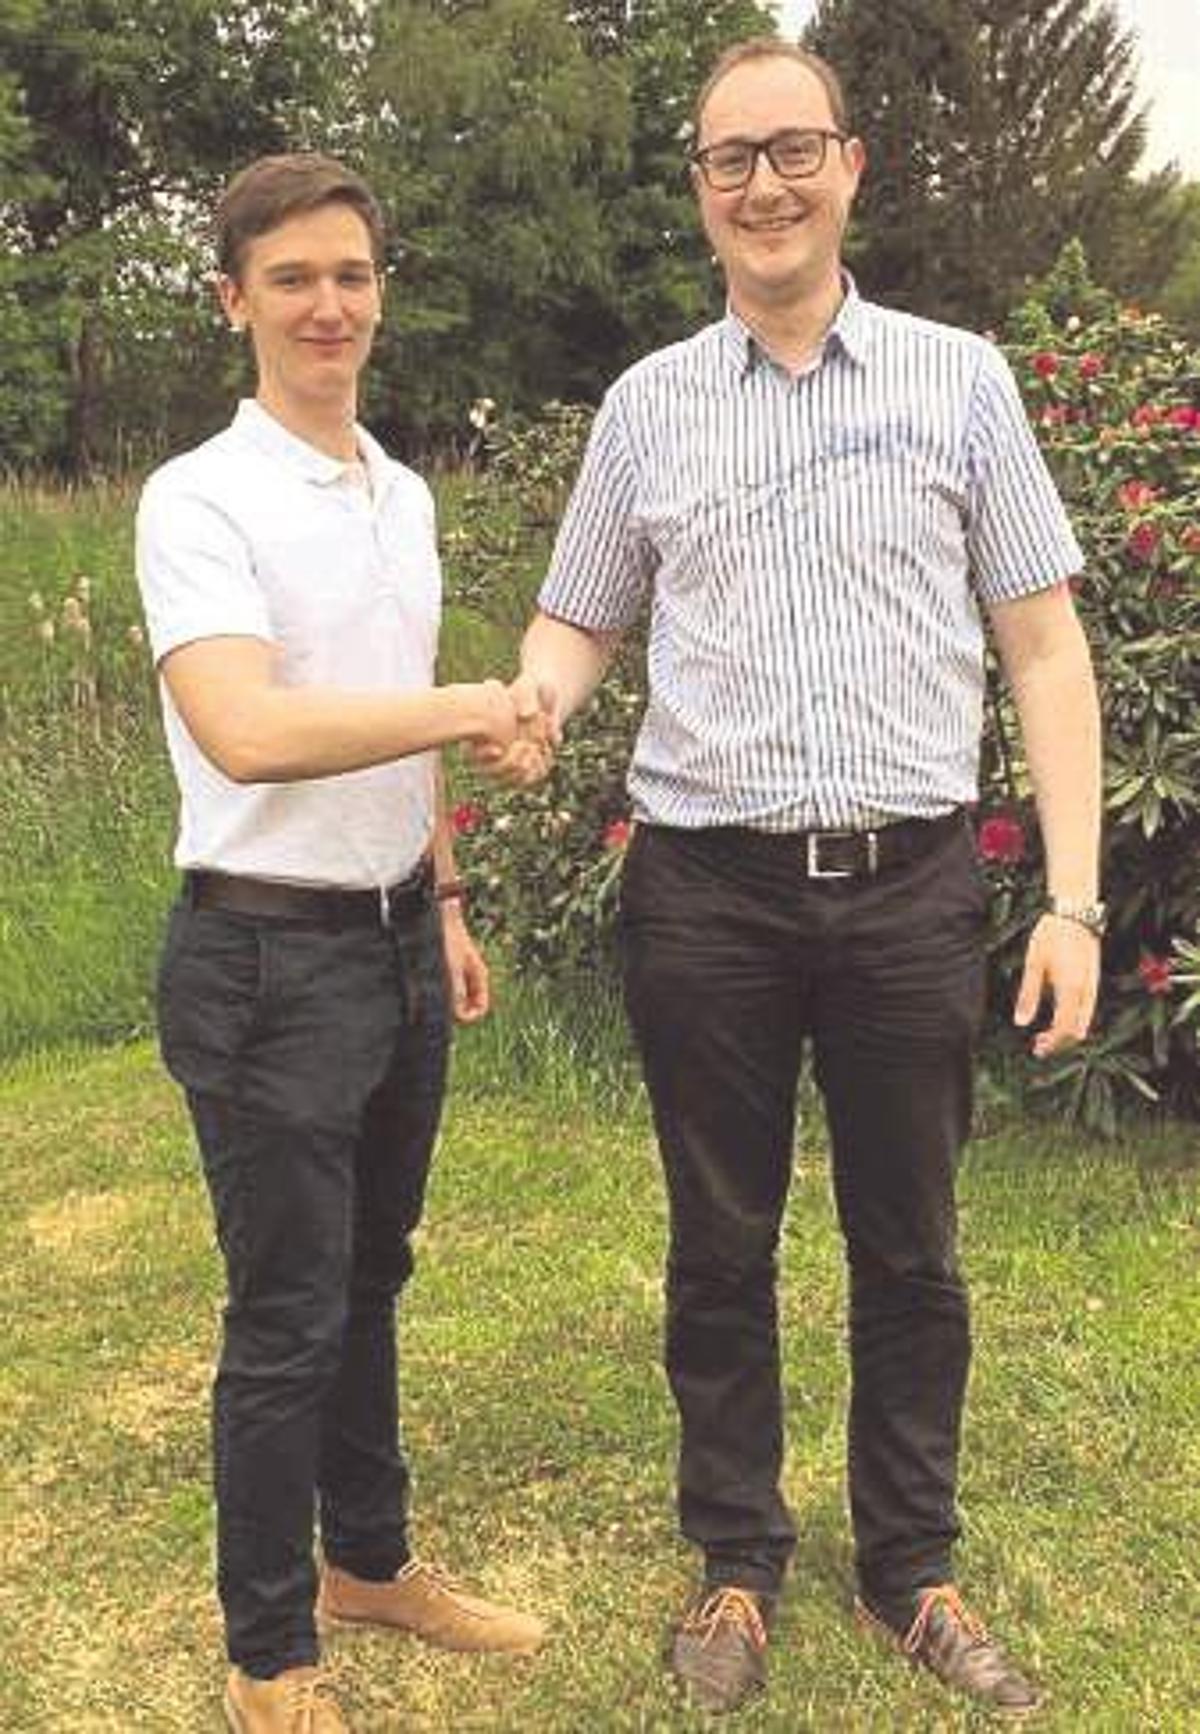 Der neue Vorsitzende Lukas Marquardt (l.) nahm Glckwnsche vom Chef des Landesverbands, Josef Kuhlmann, entgegen. - Foto: Junge Union